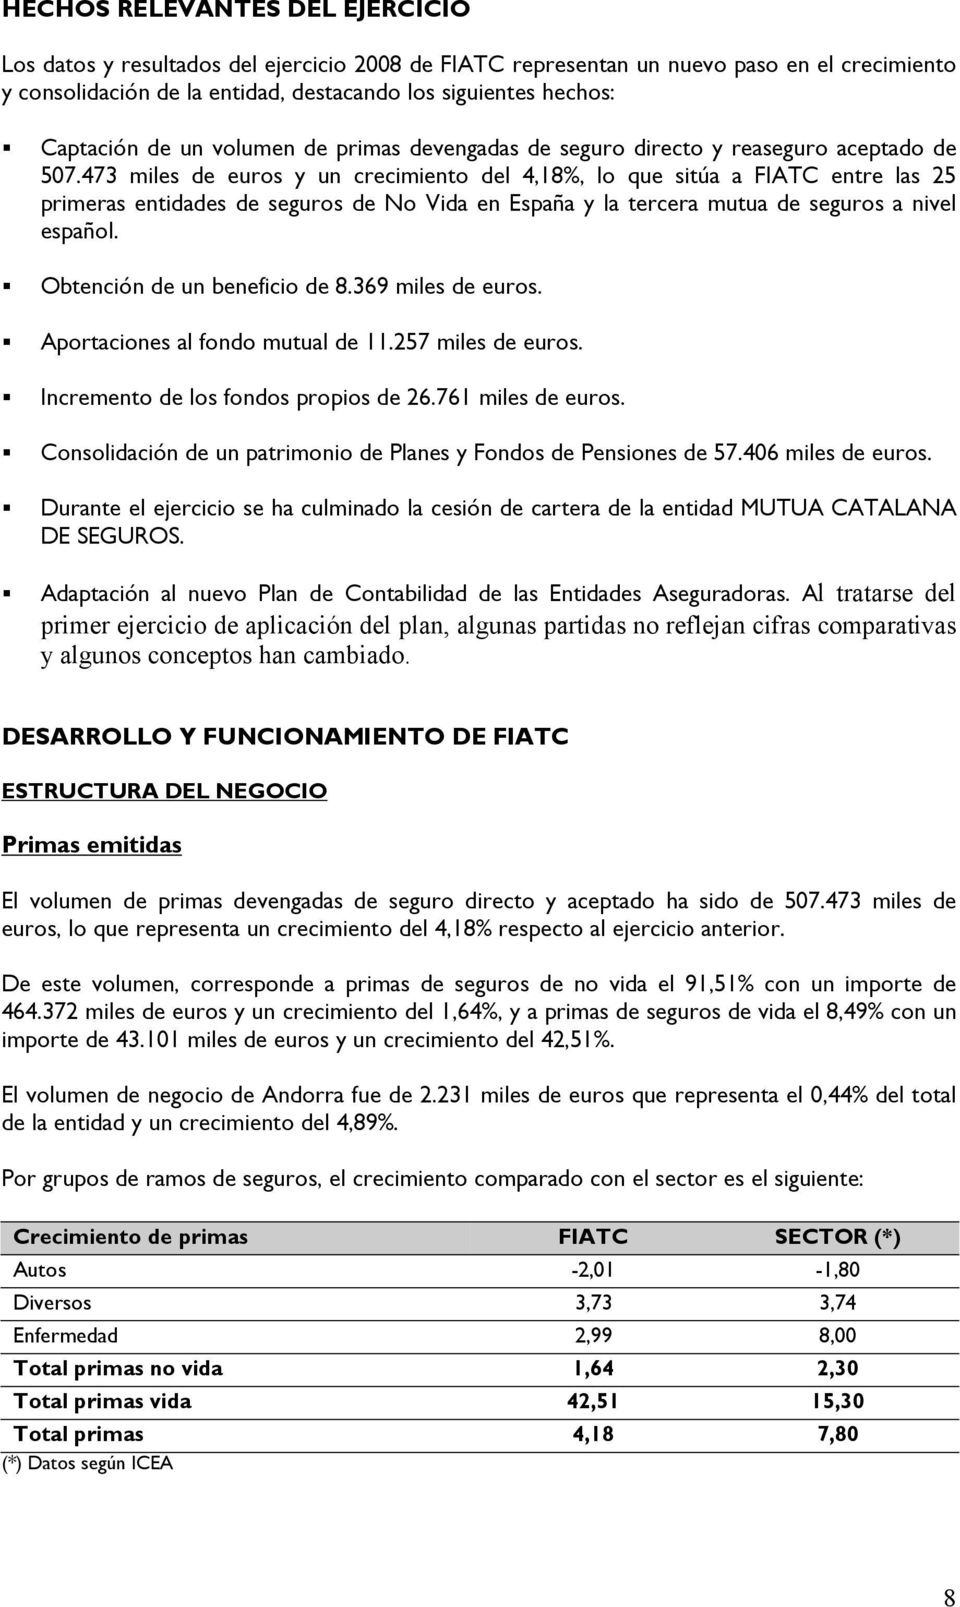 473 miles de euros y un crecimiento del 4,18%, lo que sitúa a FIATC entre las 25 primeras entidades de seguros de No Vida en España y la tercera mutua de seguros a nivel español.